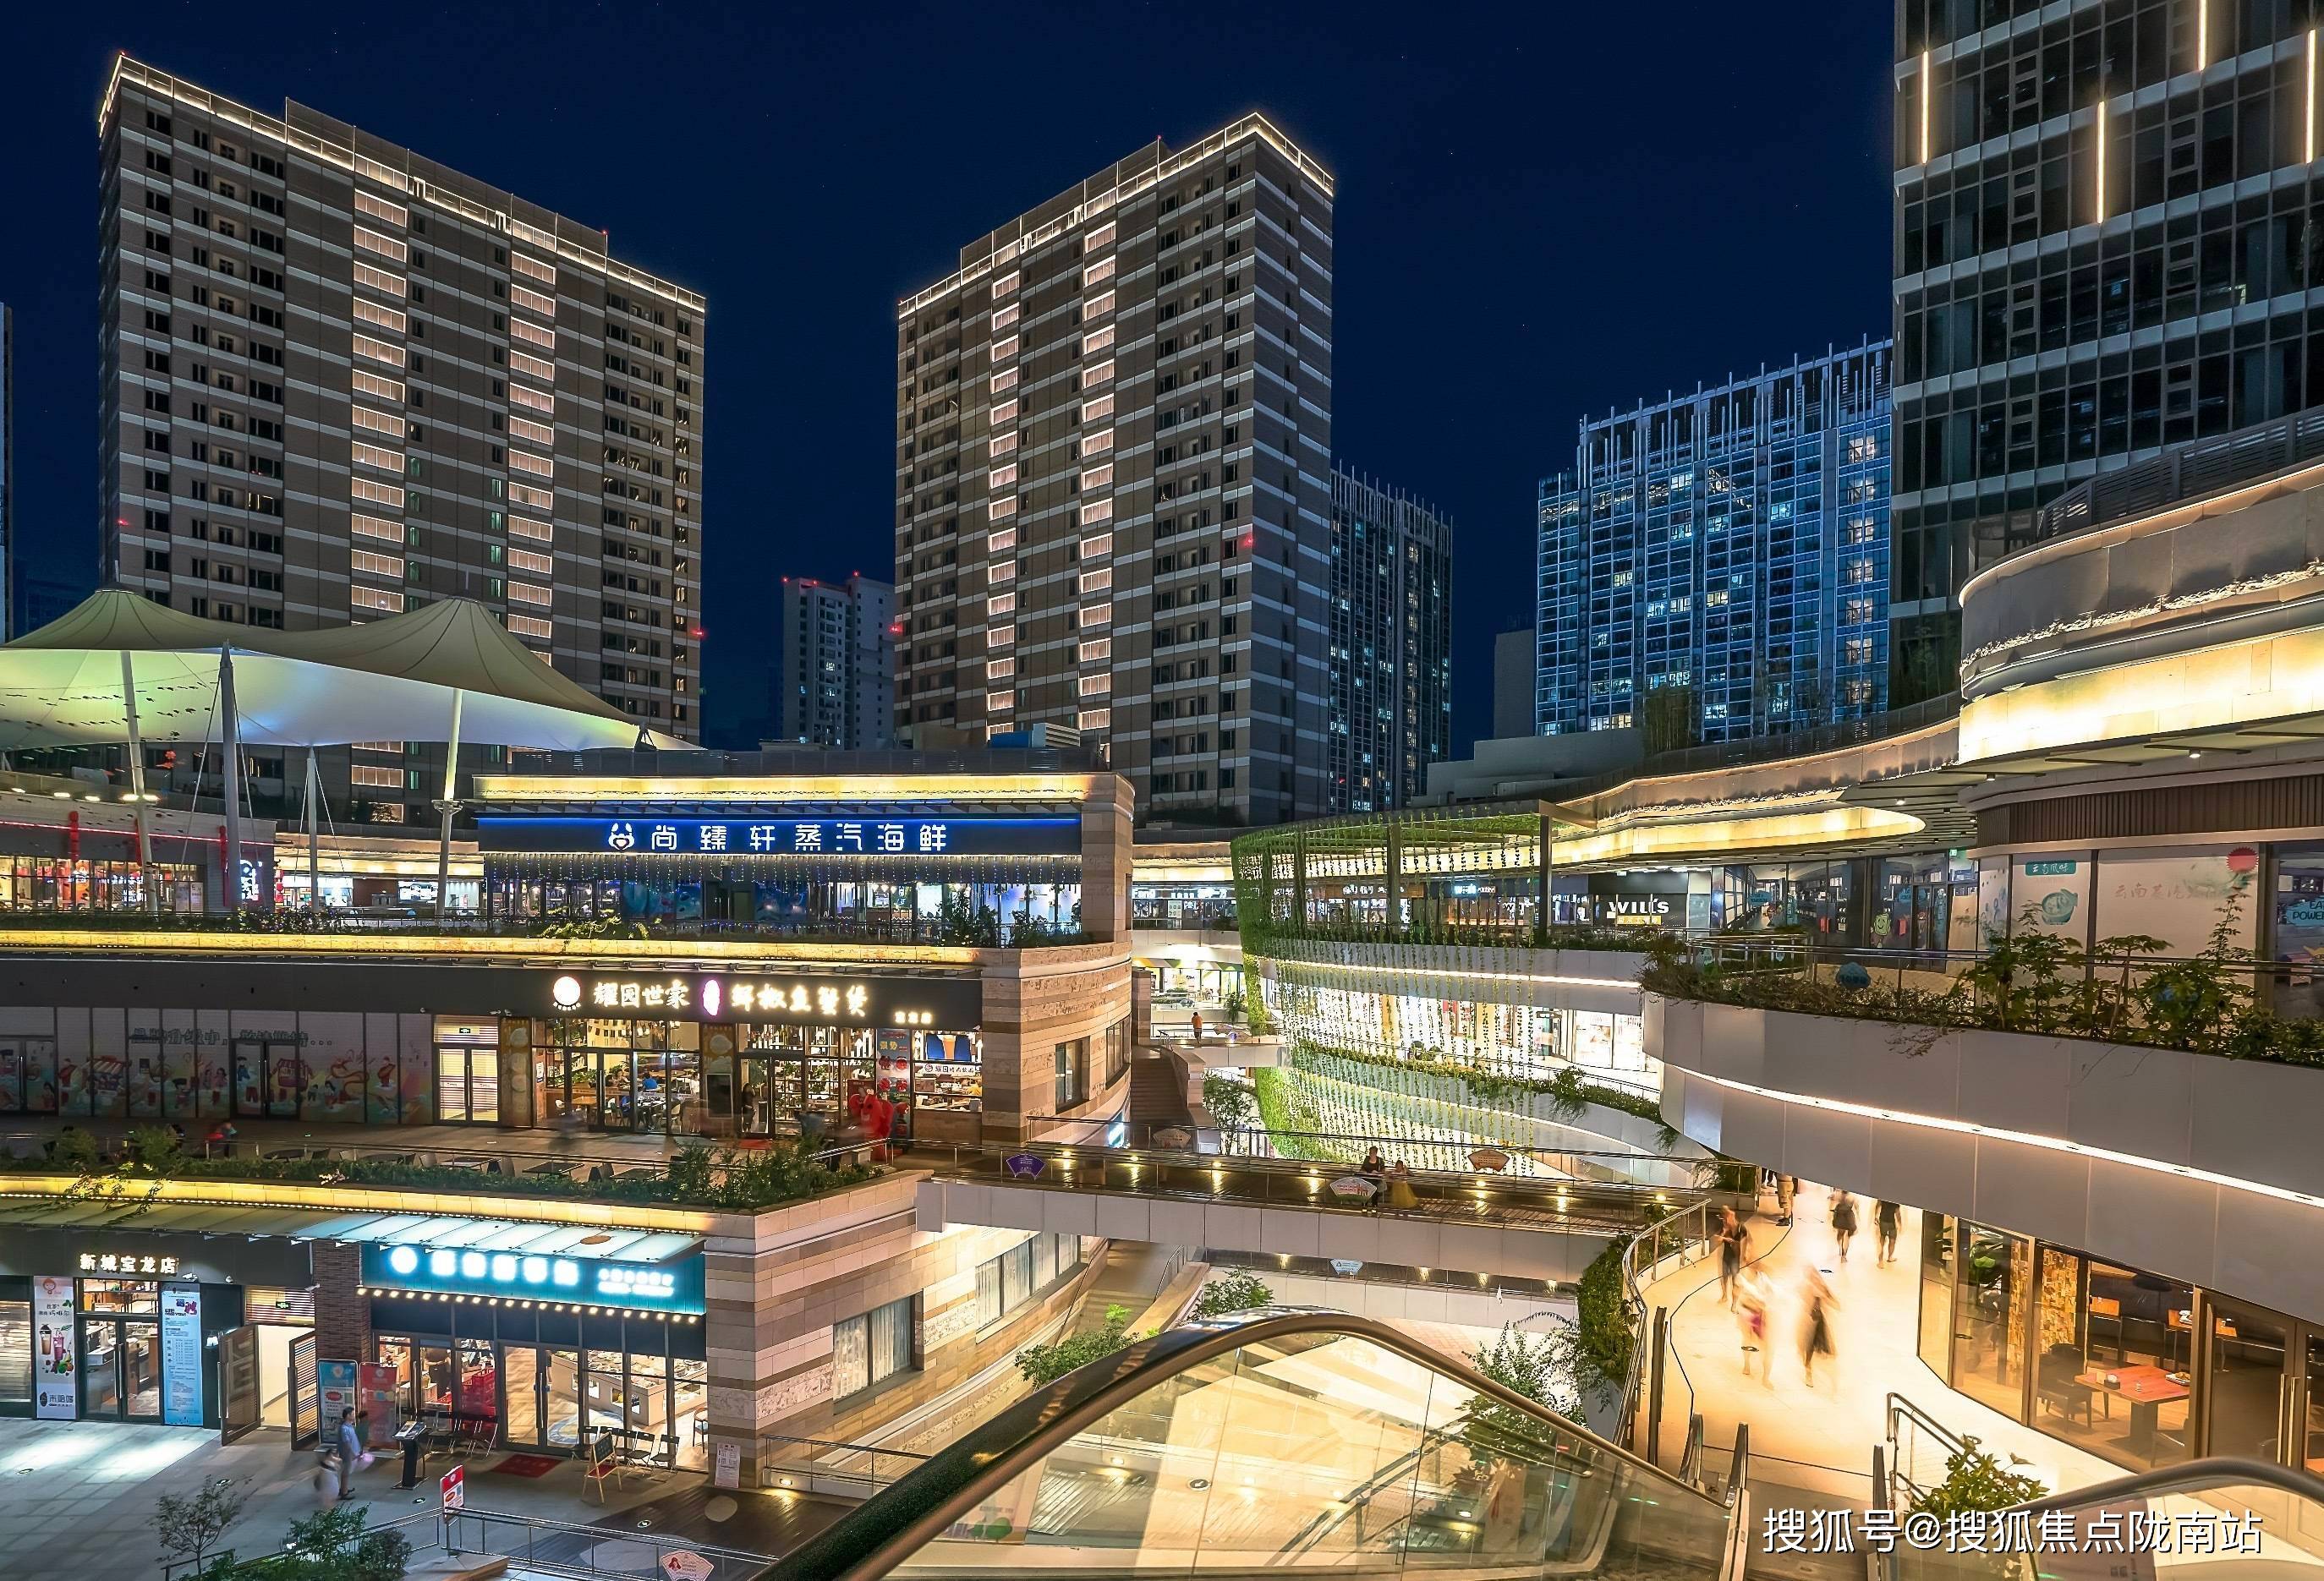 上海宝龙商业广场图片